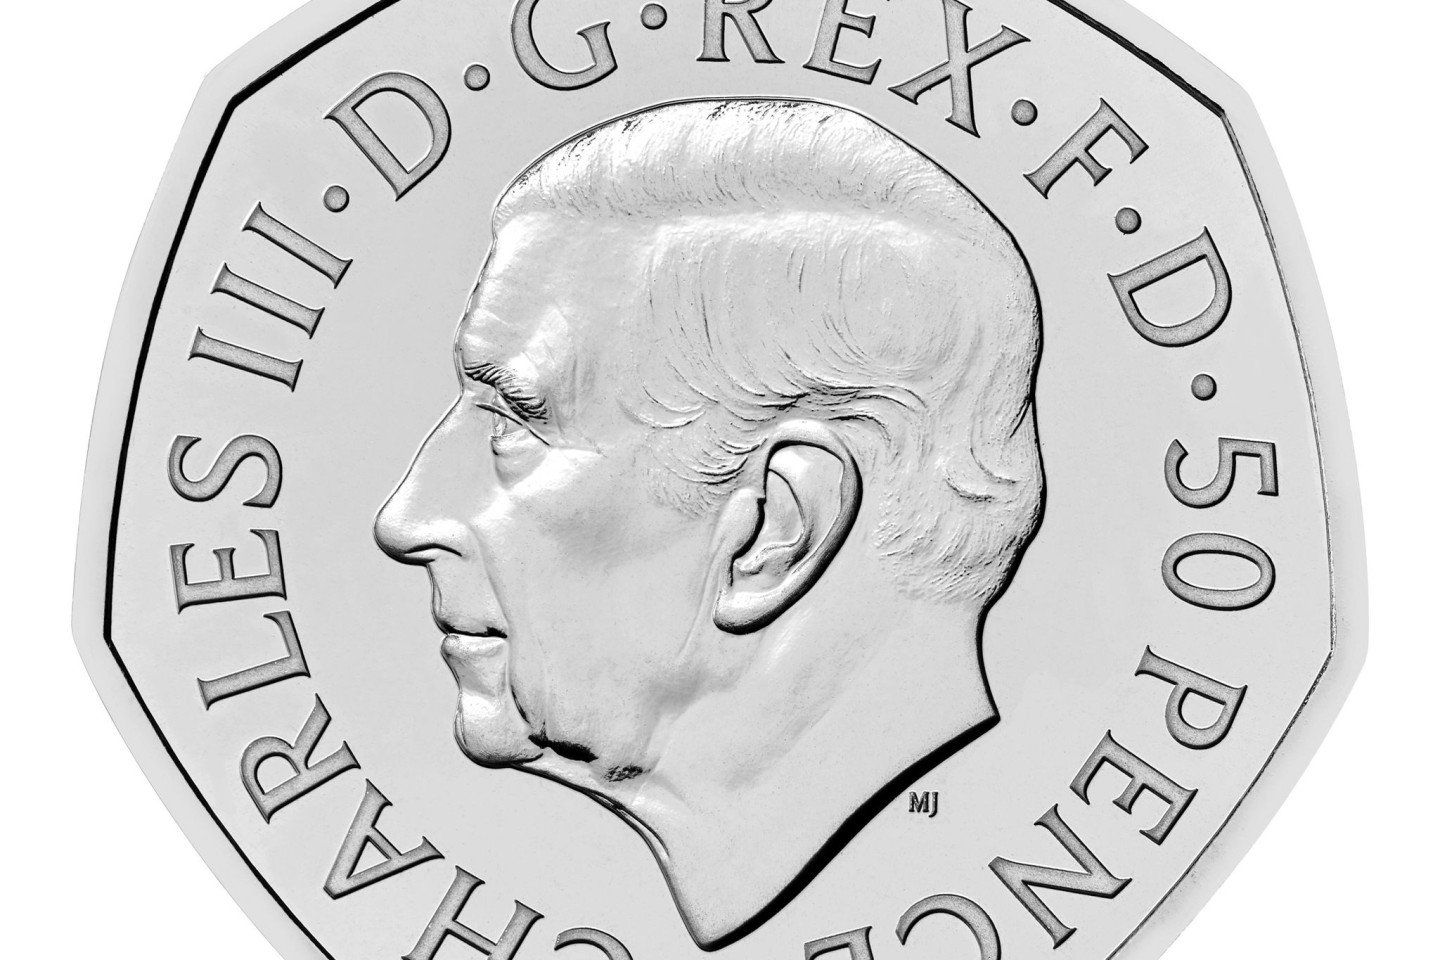 Die Vorderseite der neuen 50-Pence-Münze zeigt das Porträt von König Charles III.